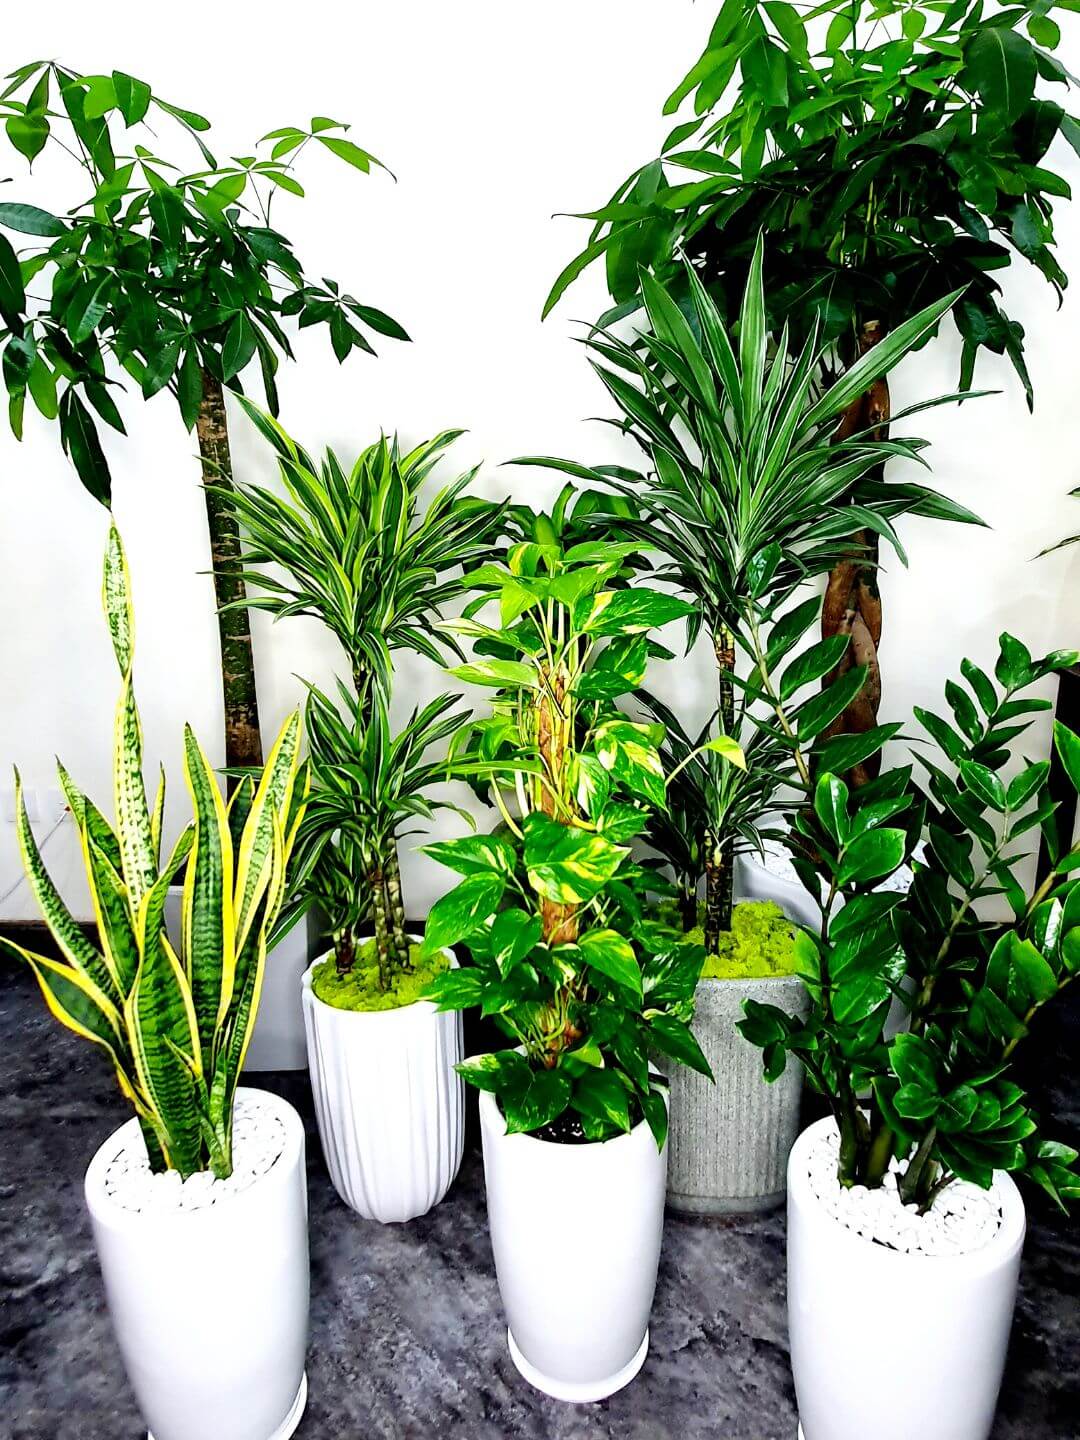 Corporate Office Bundle 8 Premium Plants | Low Light